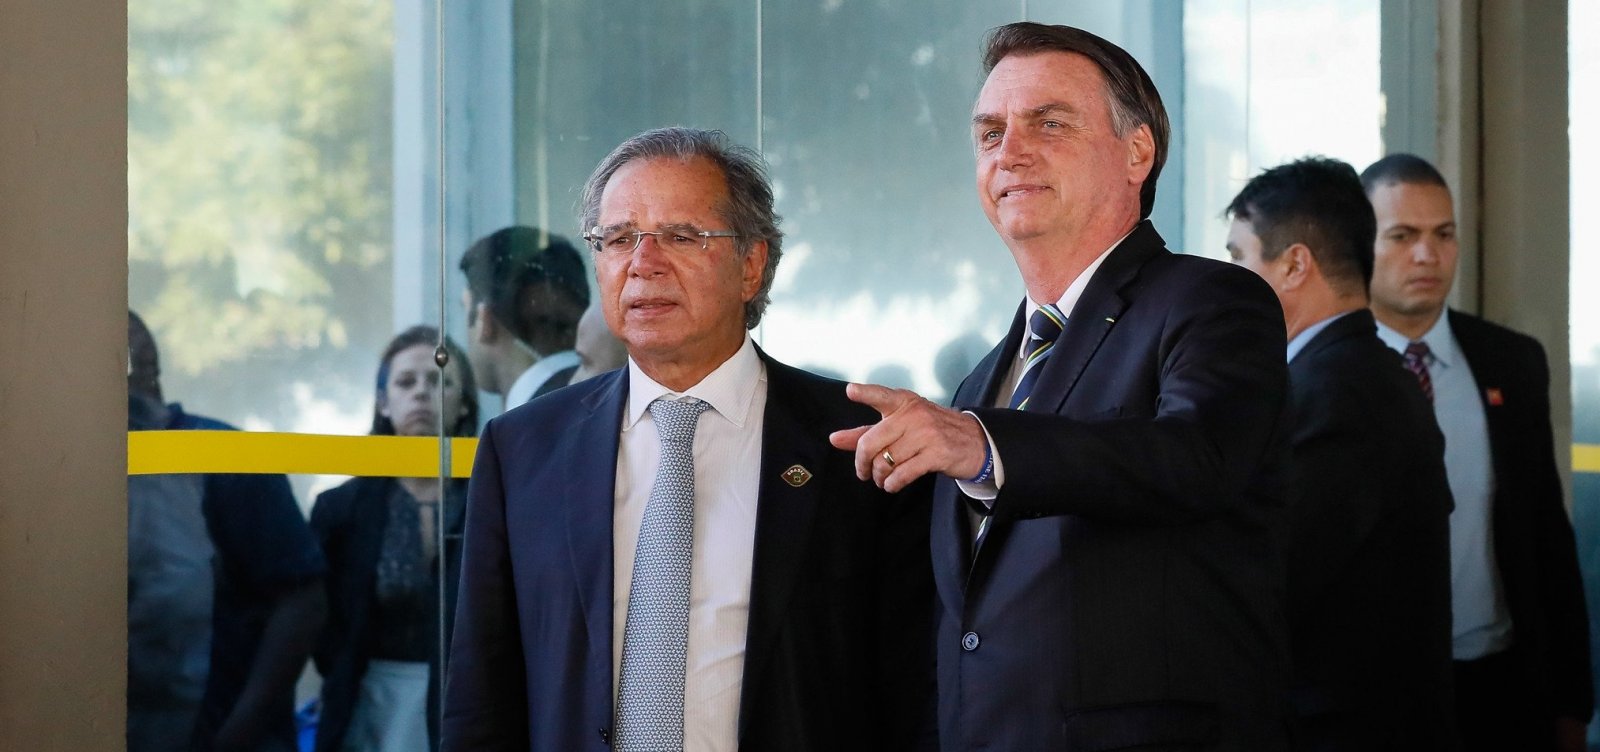 Bolsonaro avalia corte de R$ 10 bilhões em benefício para deficientes e idosos